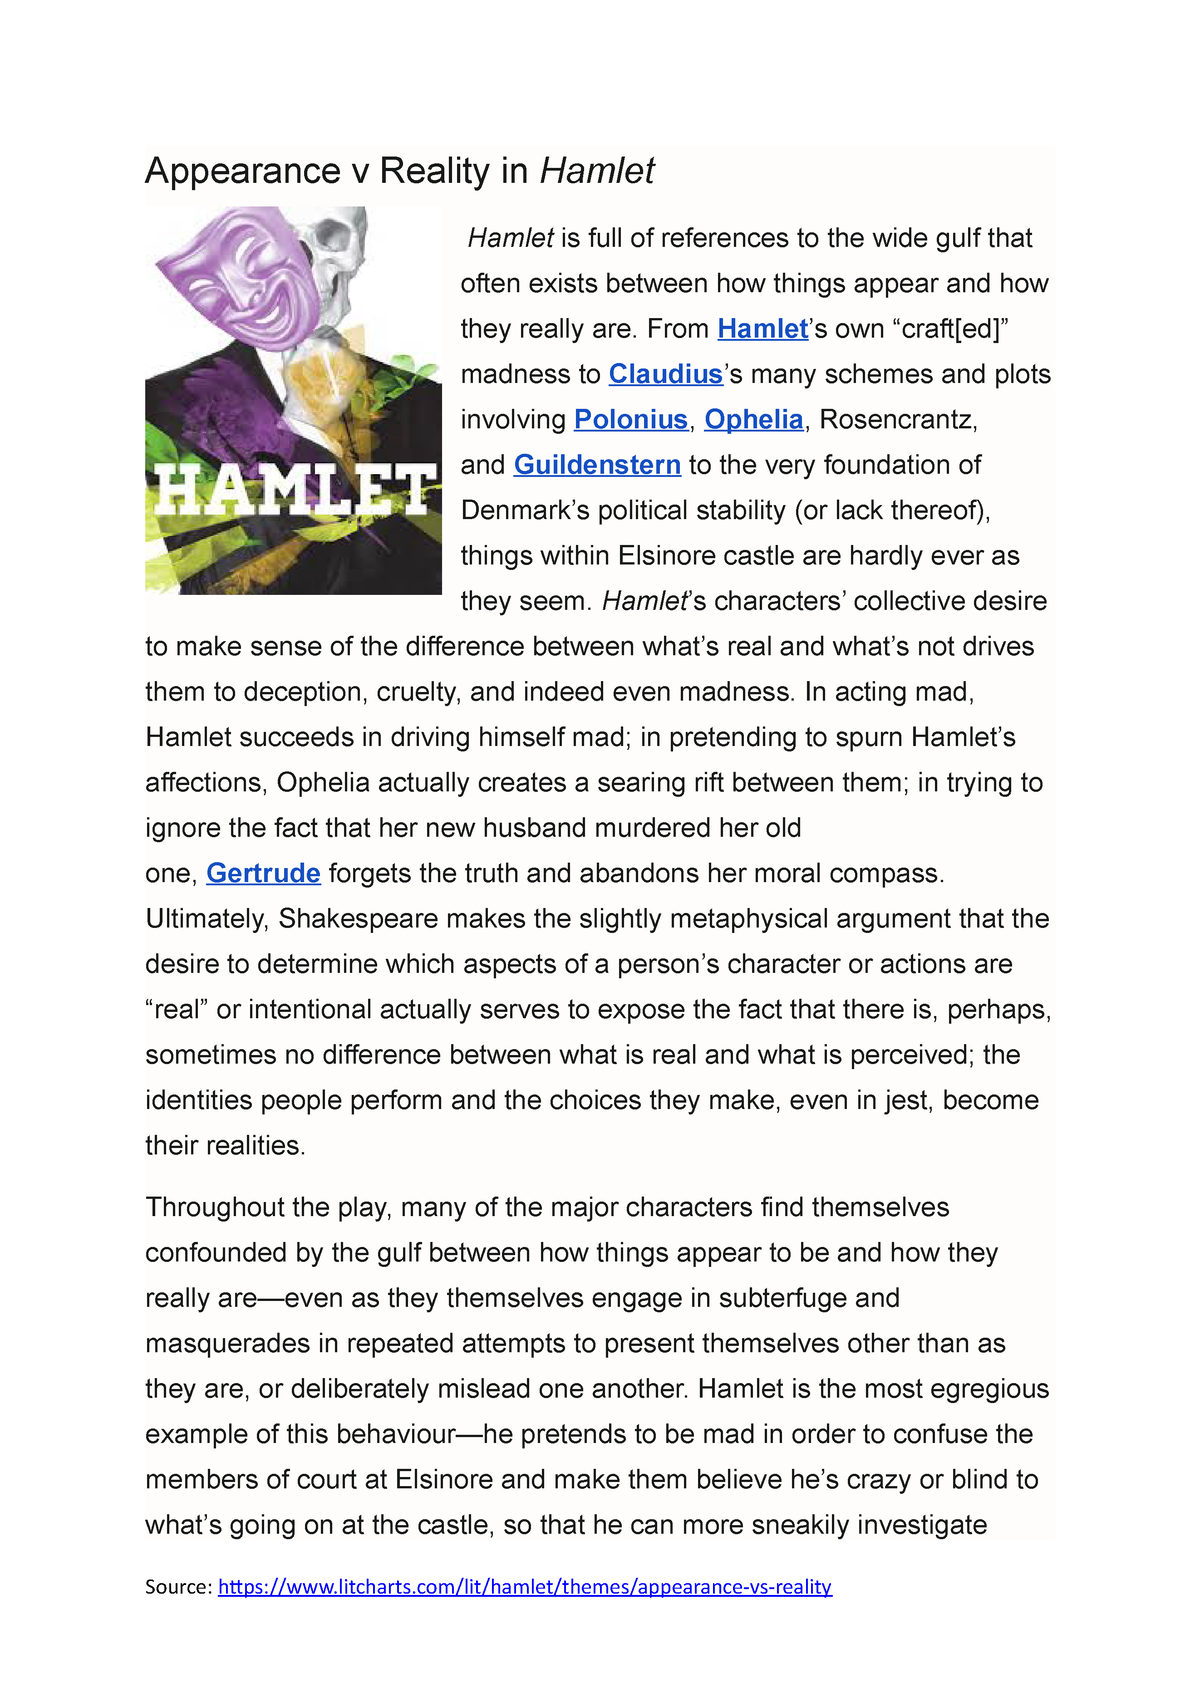 hamlet appearance vs reality essay pdf